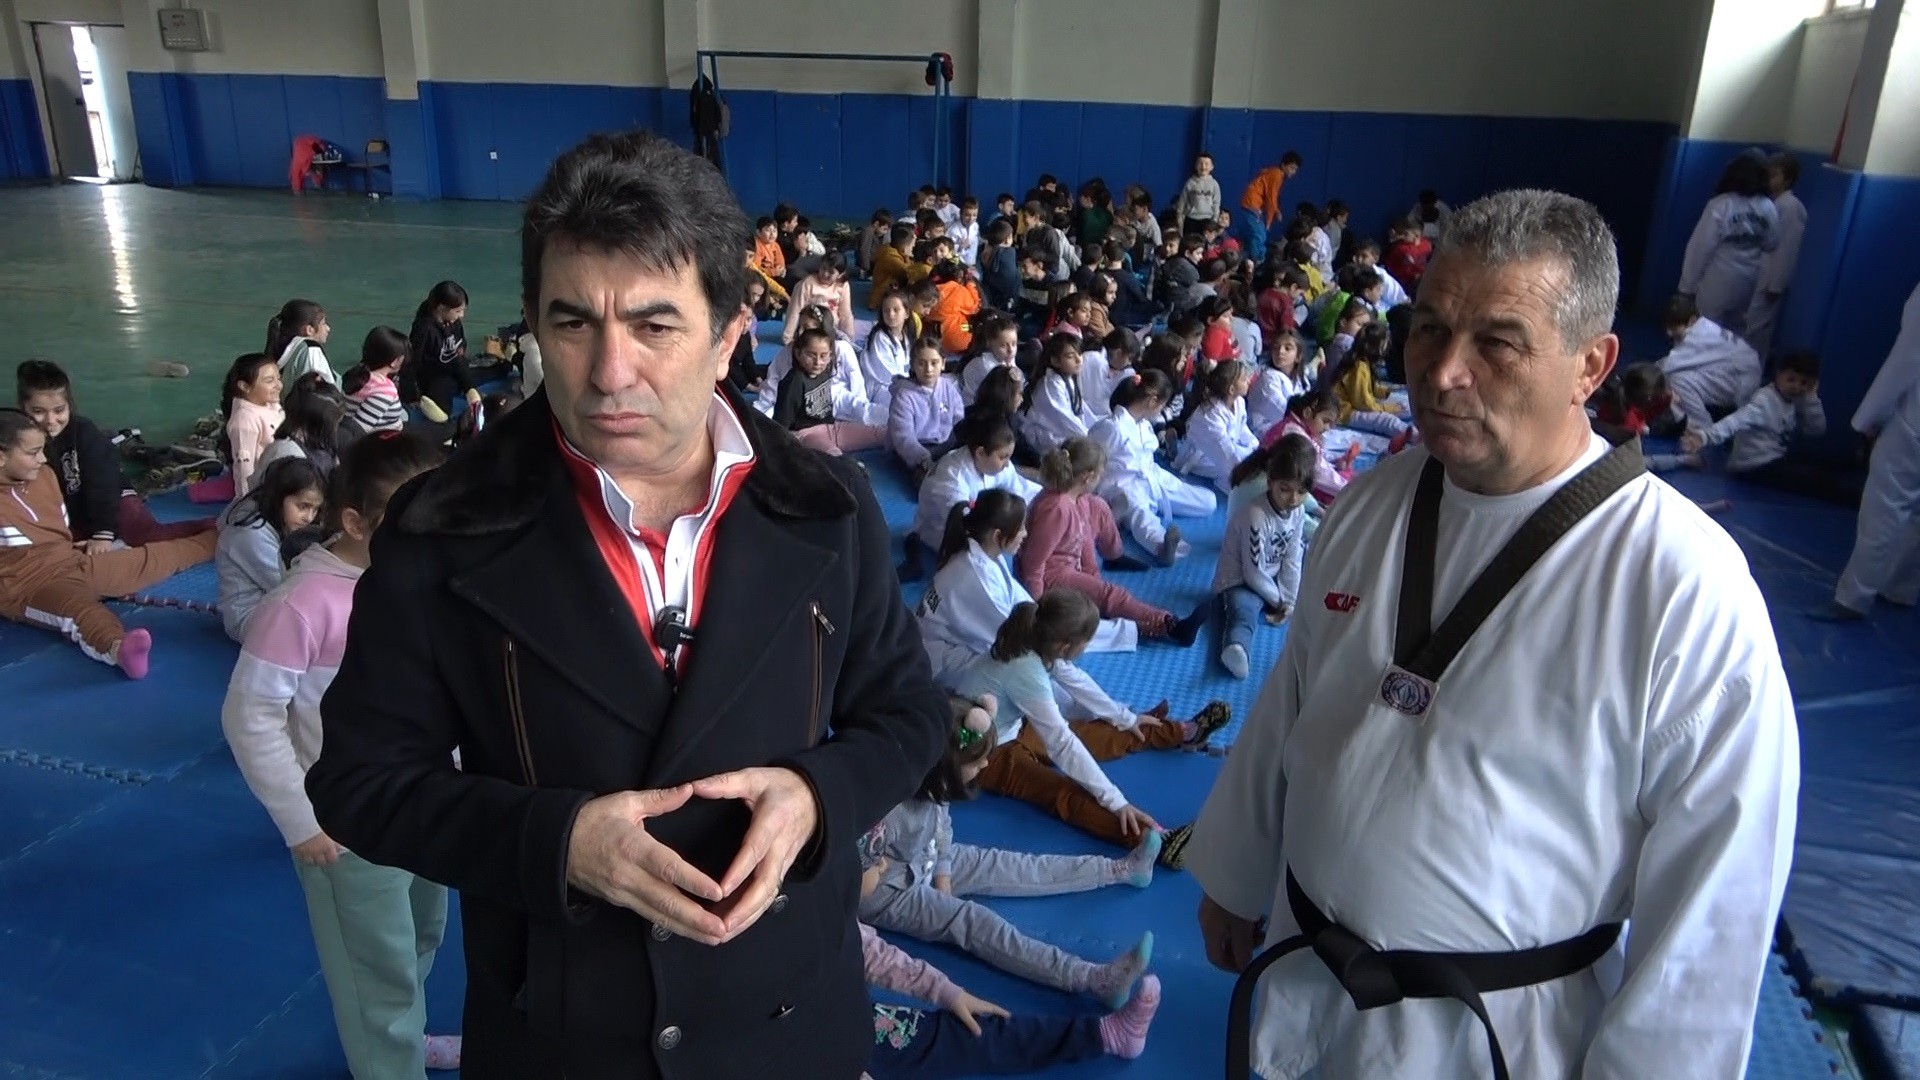 İspir belediyesi spor kulübünde tekvando heyecanı